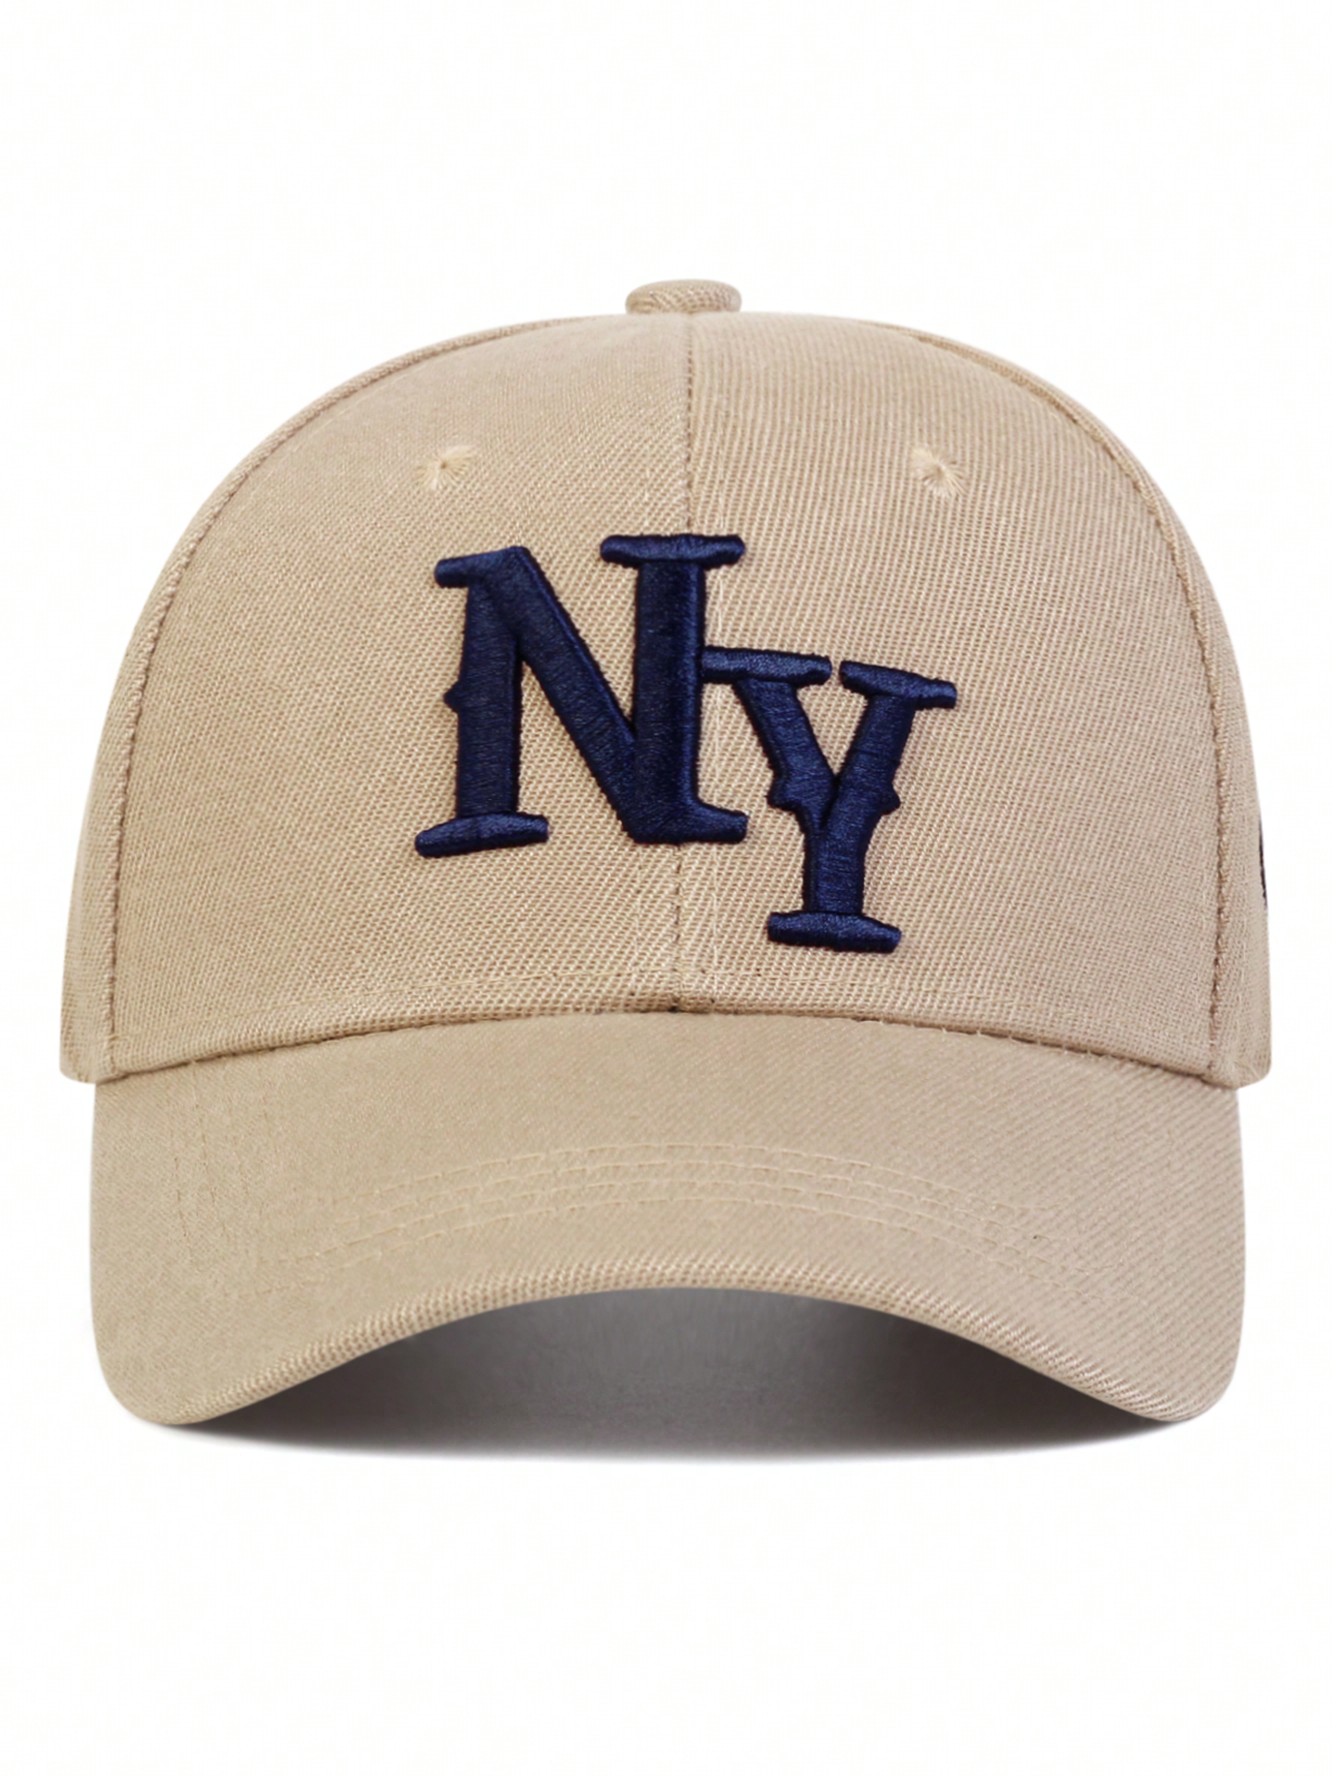 1 шт. мужская бейсболка с вышивкой букв «Нью-Йорк», хаки мужская повседневная шляпа от солнца